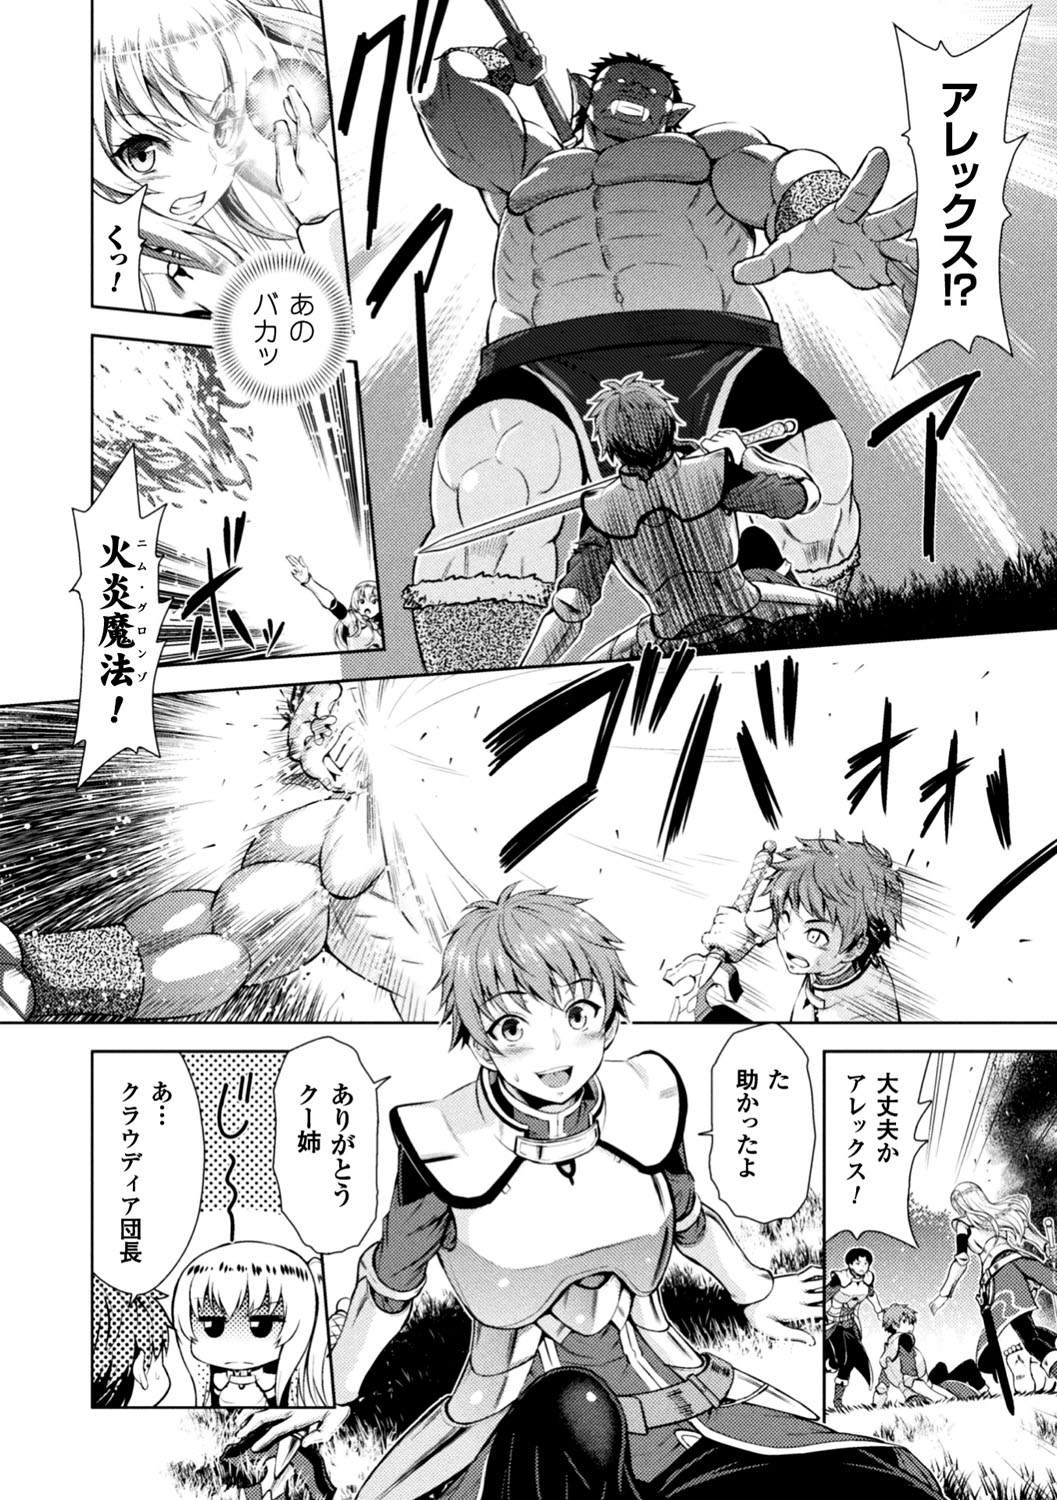 [Anthology] Seigi no Heroine Kangoku File Vol. 13 [Digital] page 8 full